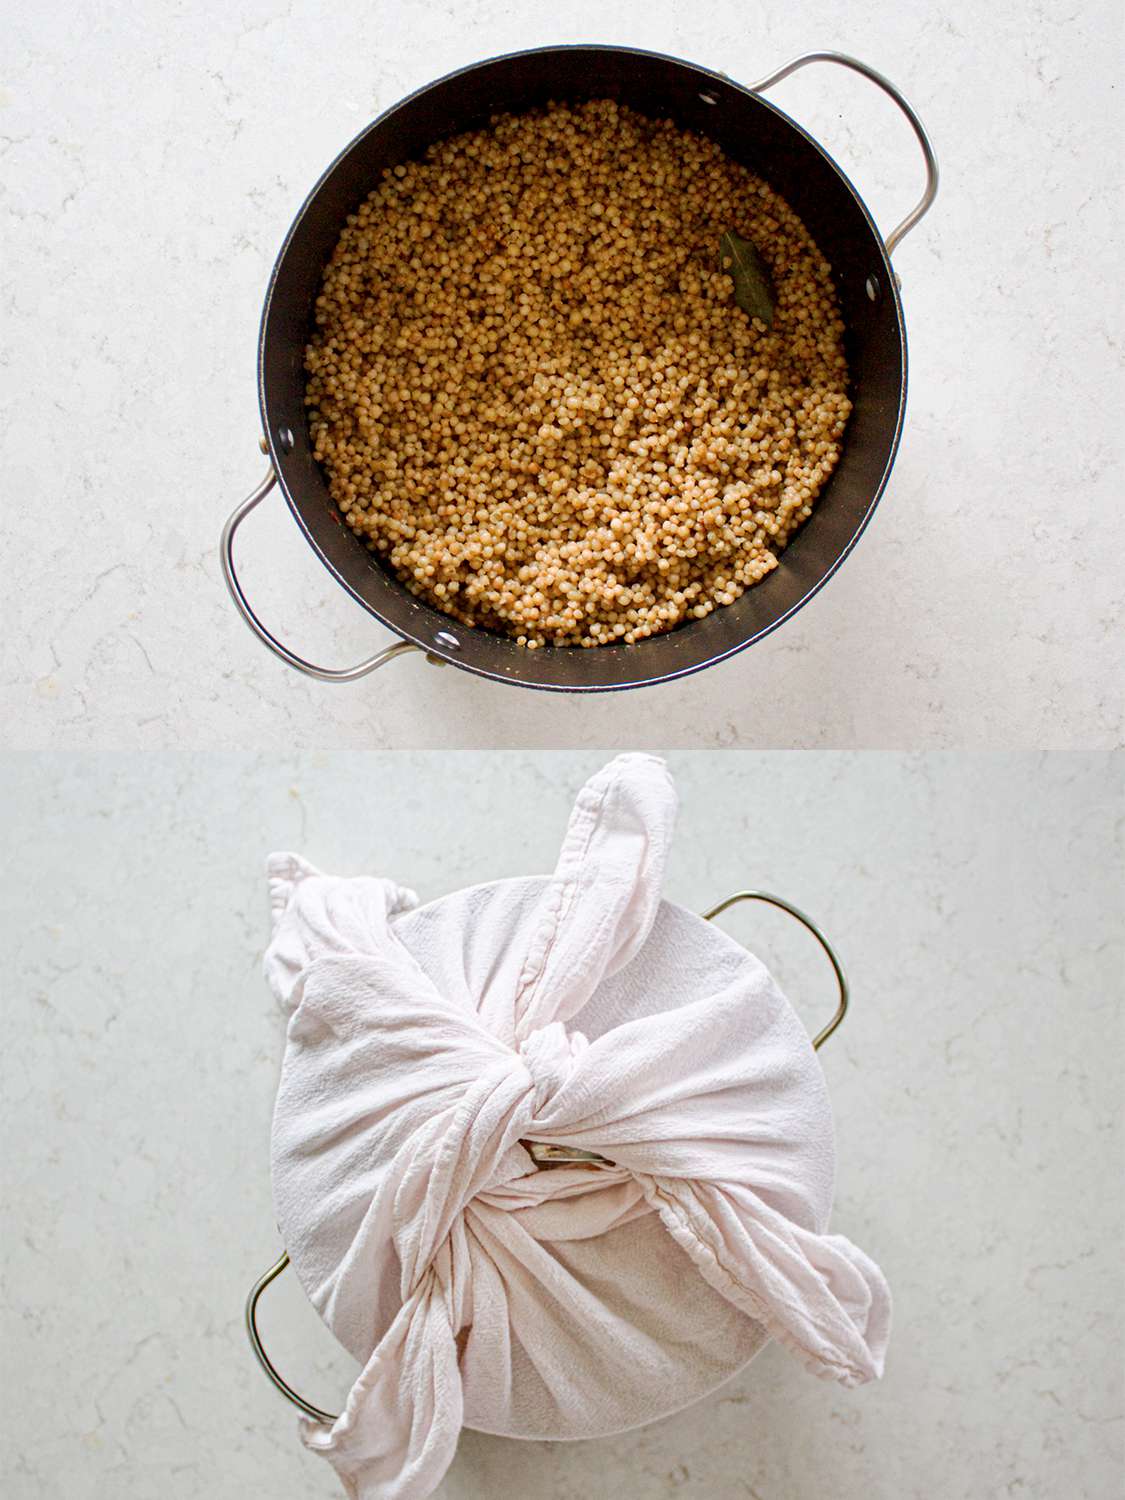 二图像拼贴。上:在锅里煮的马夫刀。下:毛巾裹在锅盖上。